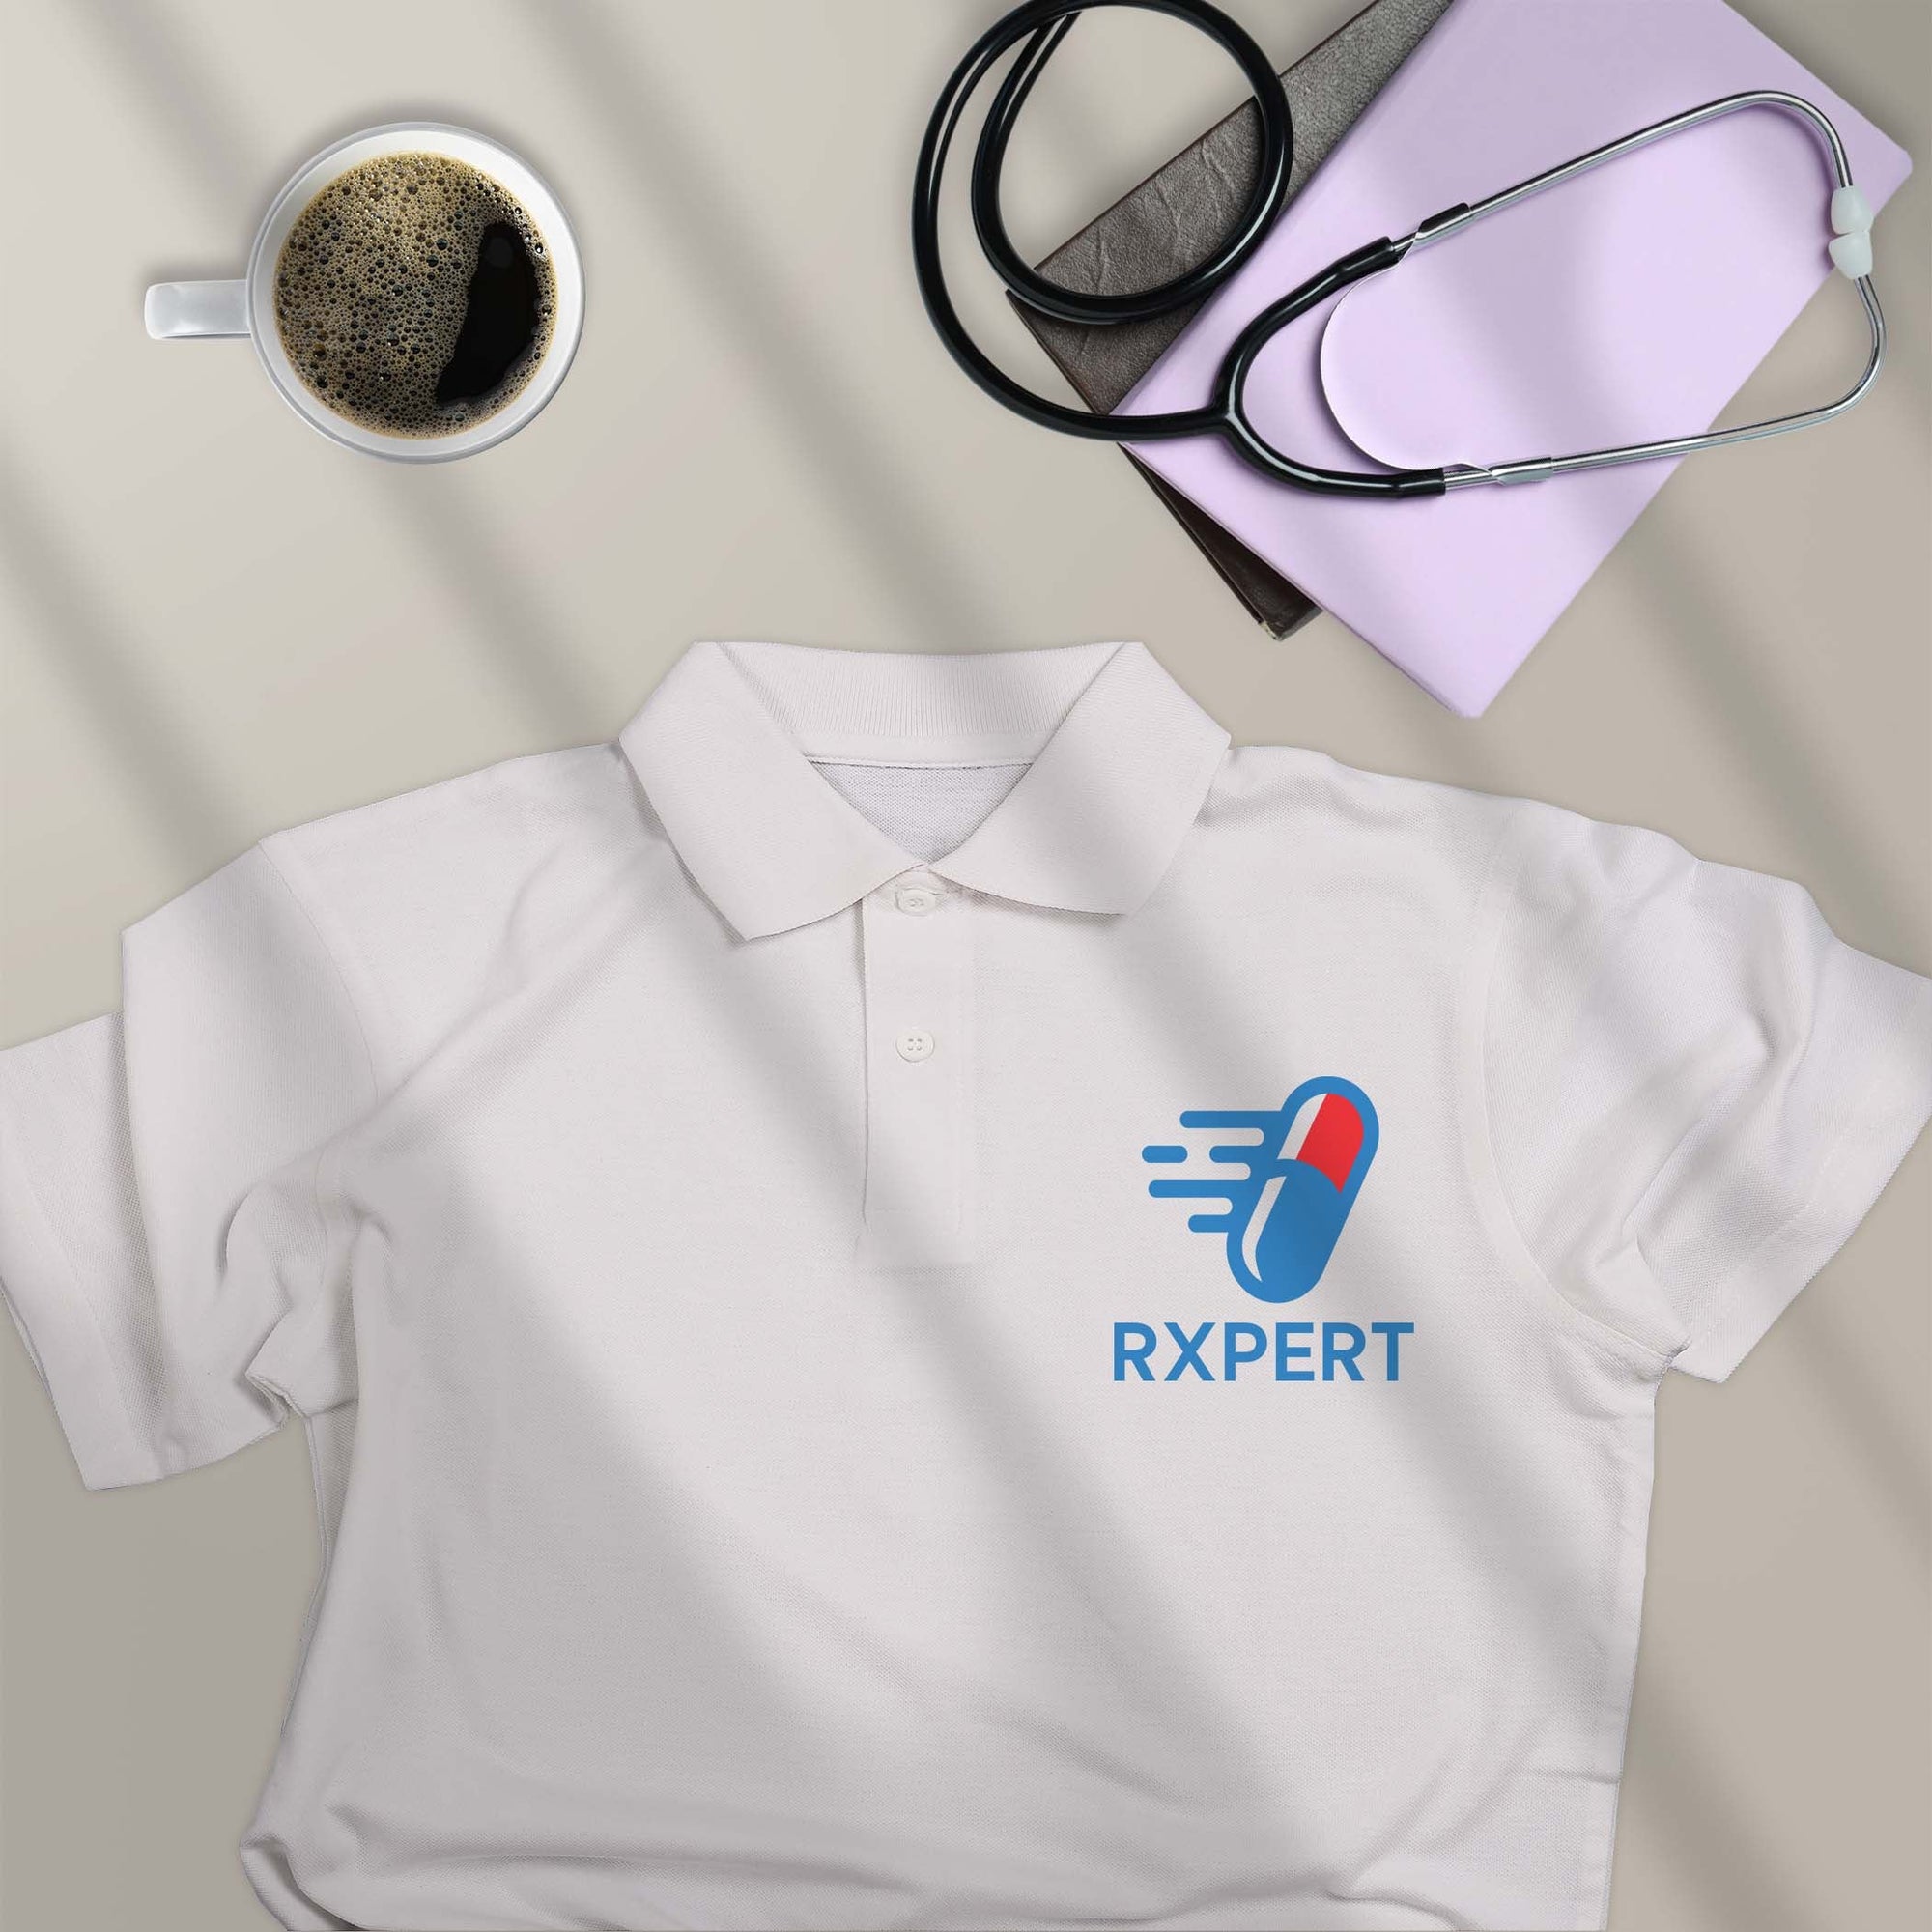 Rxpert - Polo T-shirt For Pharmacologist &amp; Pharmacist